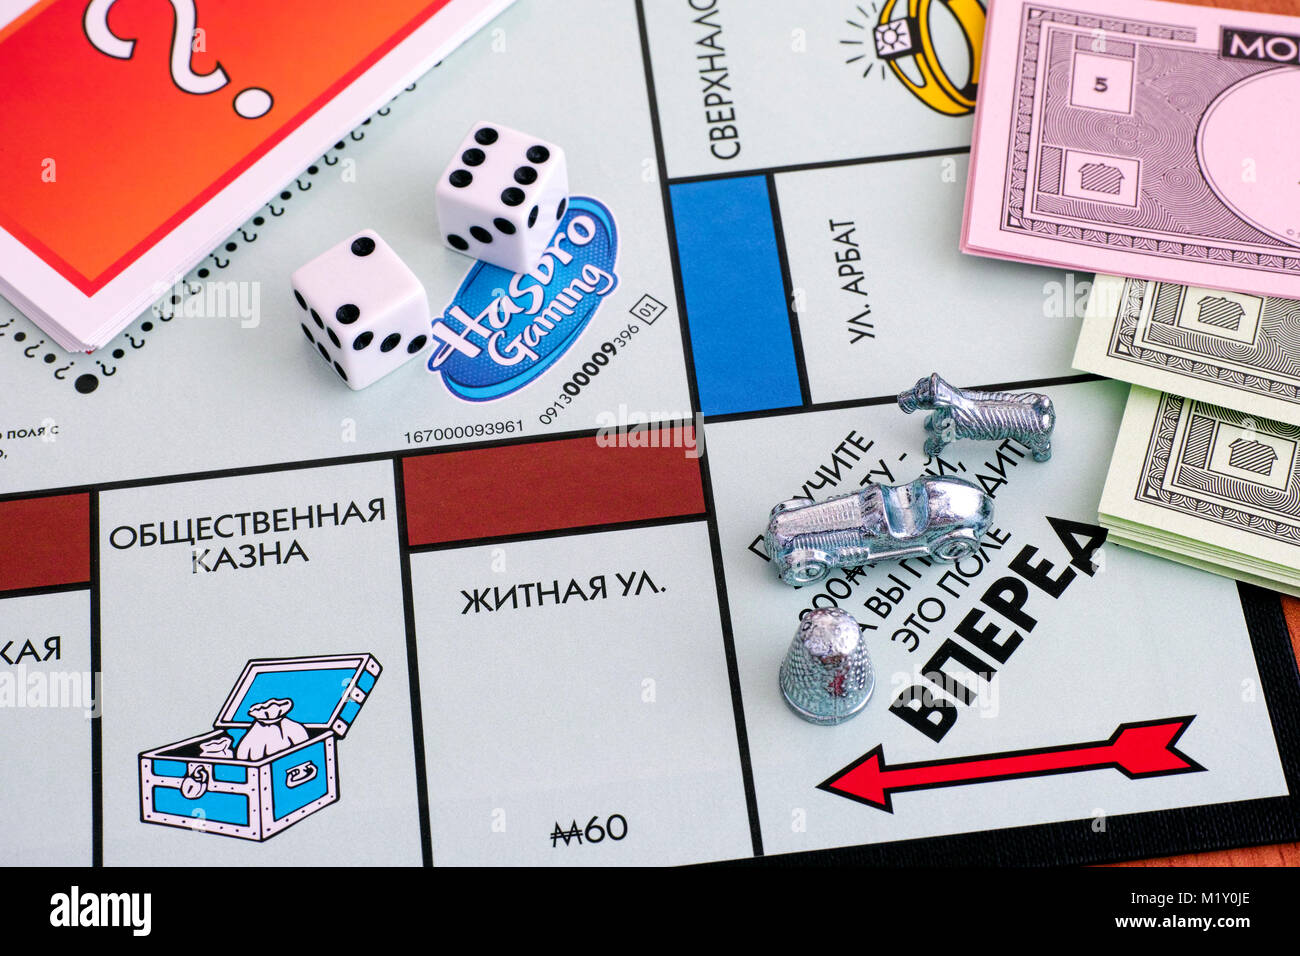 Tambow, Russische Föderation - Januar 26, 2018 Monopoly Brettspiel. Drei  Tokens auf Feld gehen von Spielbrett mit zwei Würfel, Geld und Karten.  Studi Stockfotografie - Alamy